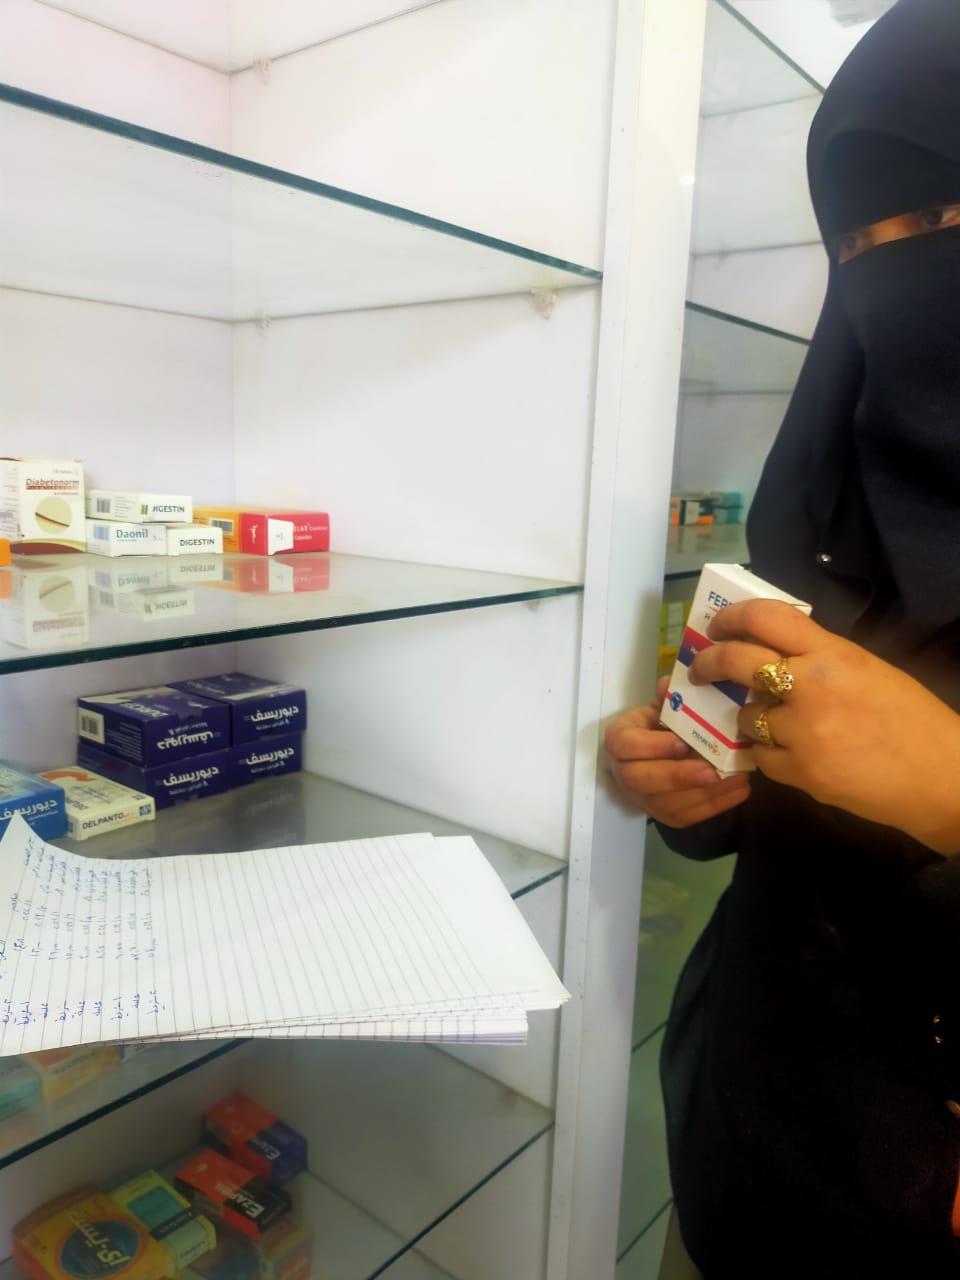 ضبط 6020 عبوة أدوية  بمكان غير مرخص بإحدى قرى الدقهلية